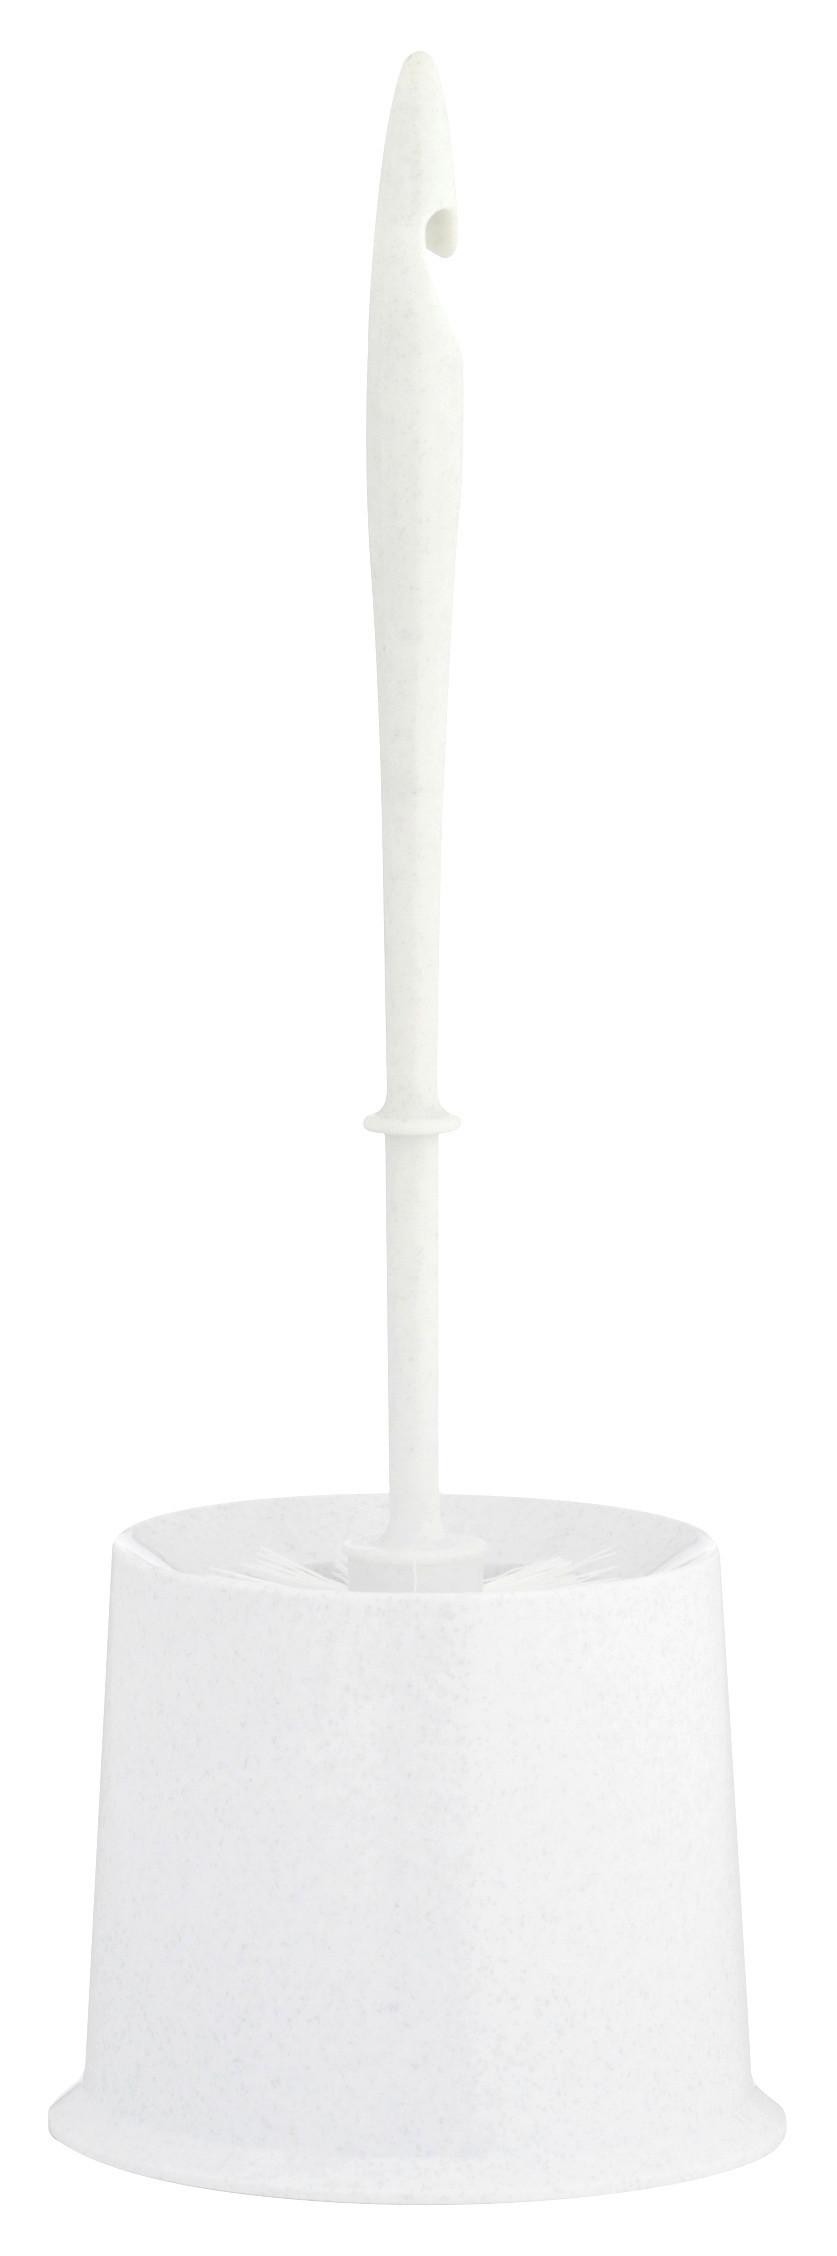 WC-Bürstengarnitur Fenja aus Kunststoff, Weiß - Weiß, KONVENTIONELL, Kunststoff (14/39cm)